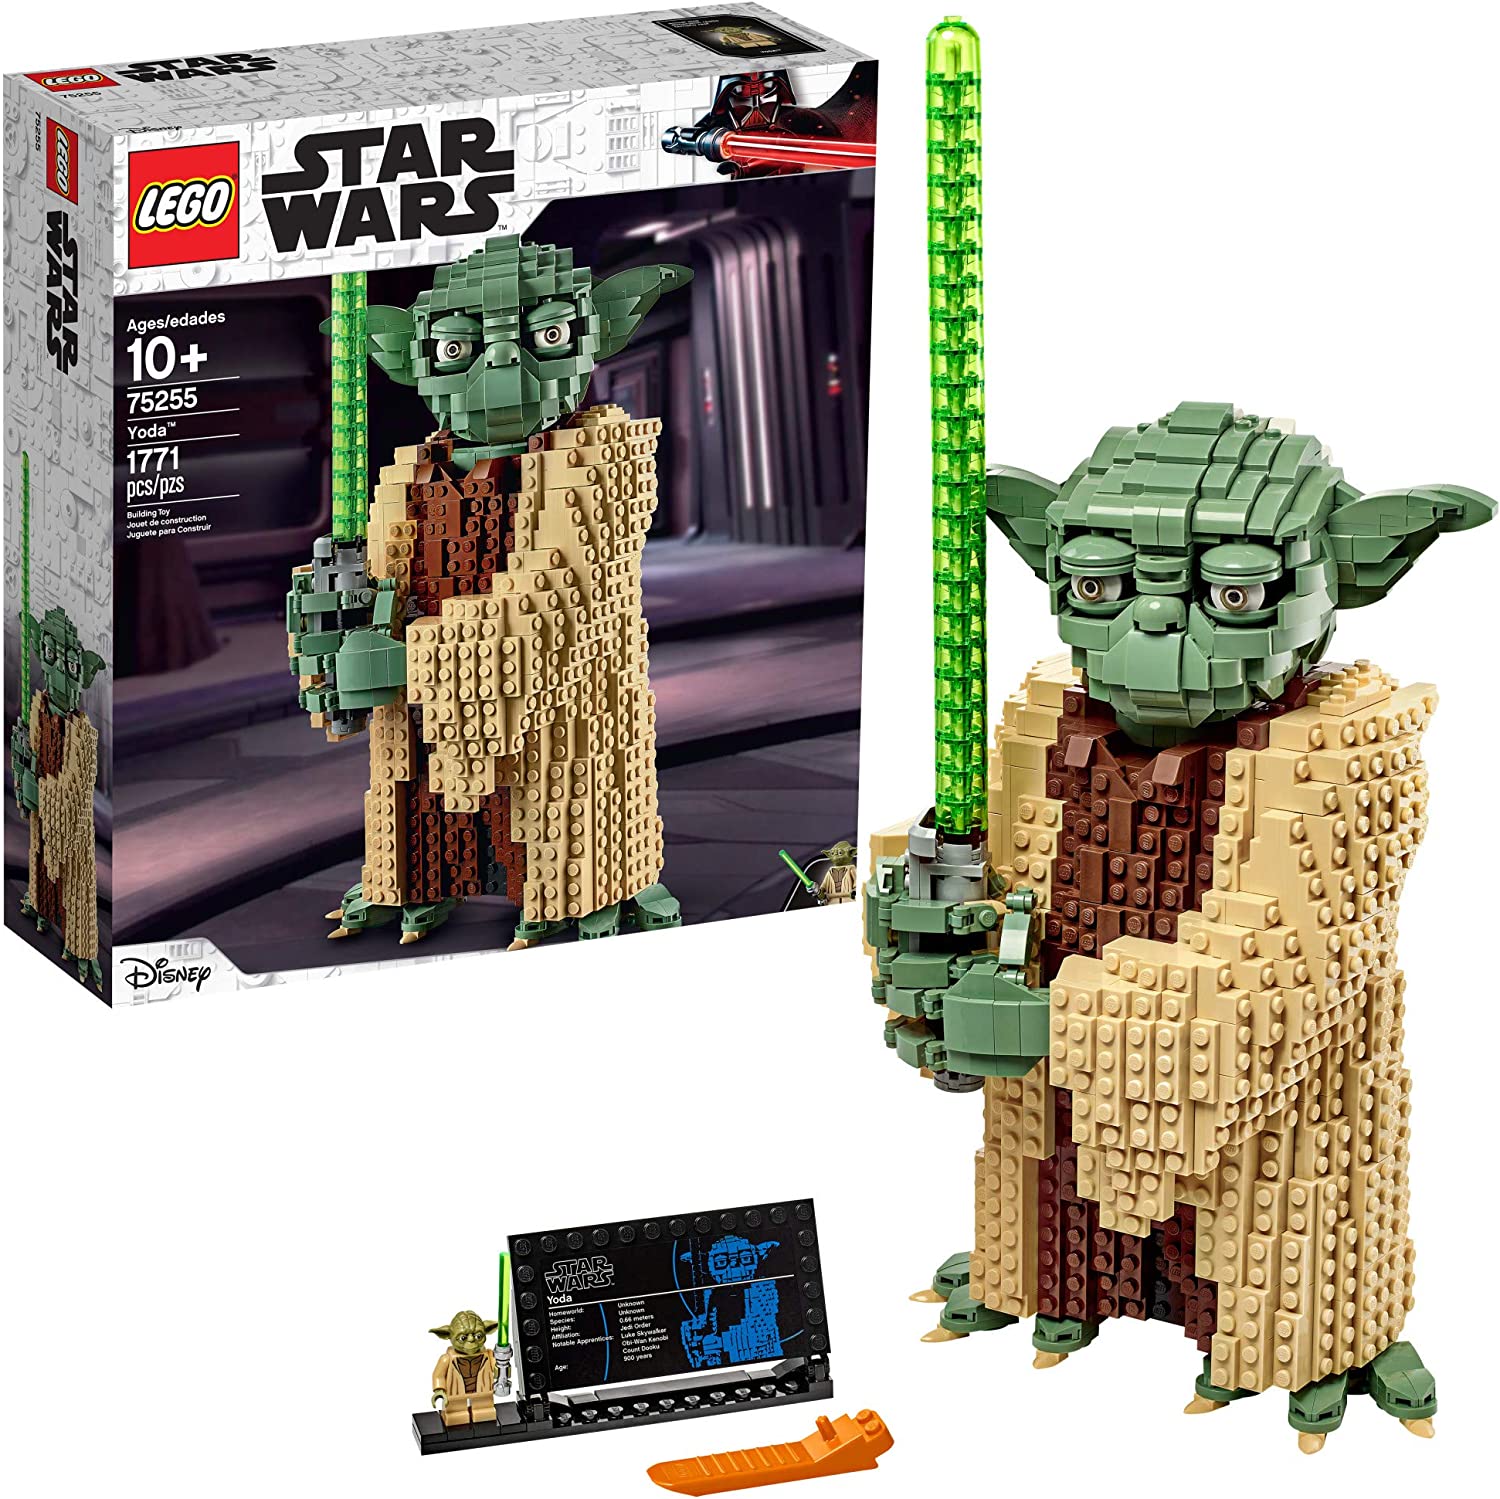 LEGO Star Wars: Ataque de los clones Yoda 75255 Yoda -(1,771 piezas)